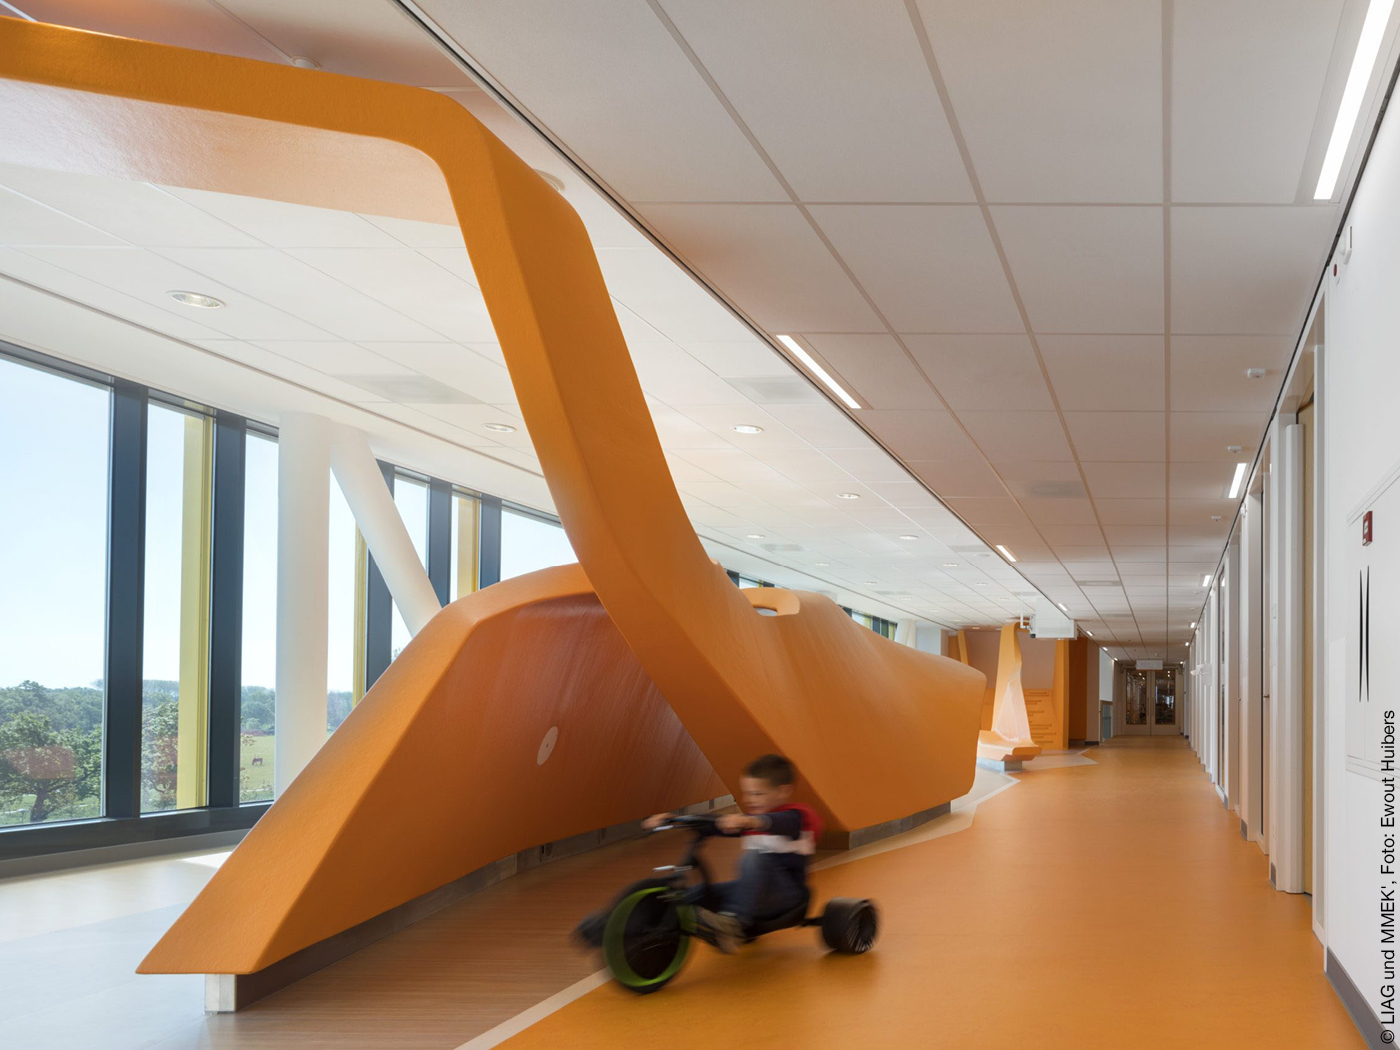 Krankenhausflur mit großen Fenstern und oranger Raumskulptur